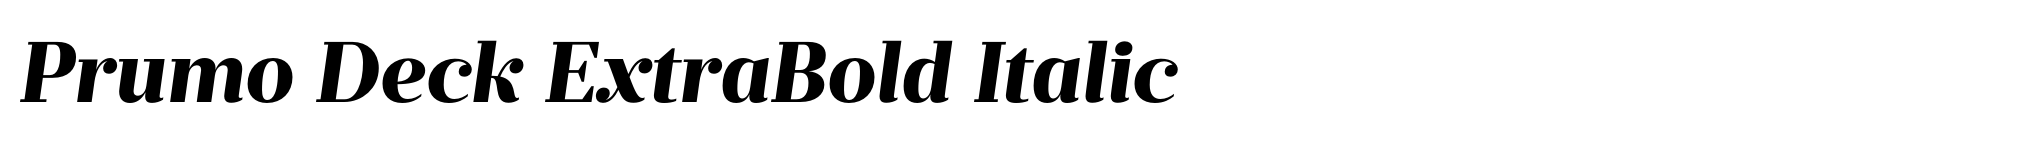 Prumo Deck ExtraBold Italic image